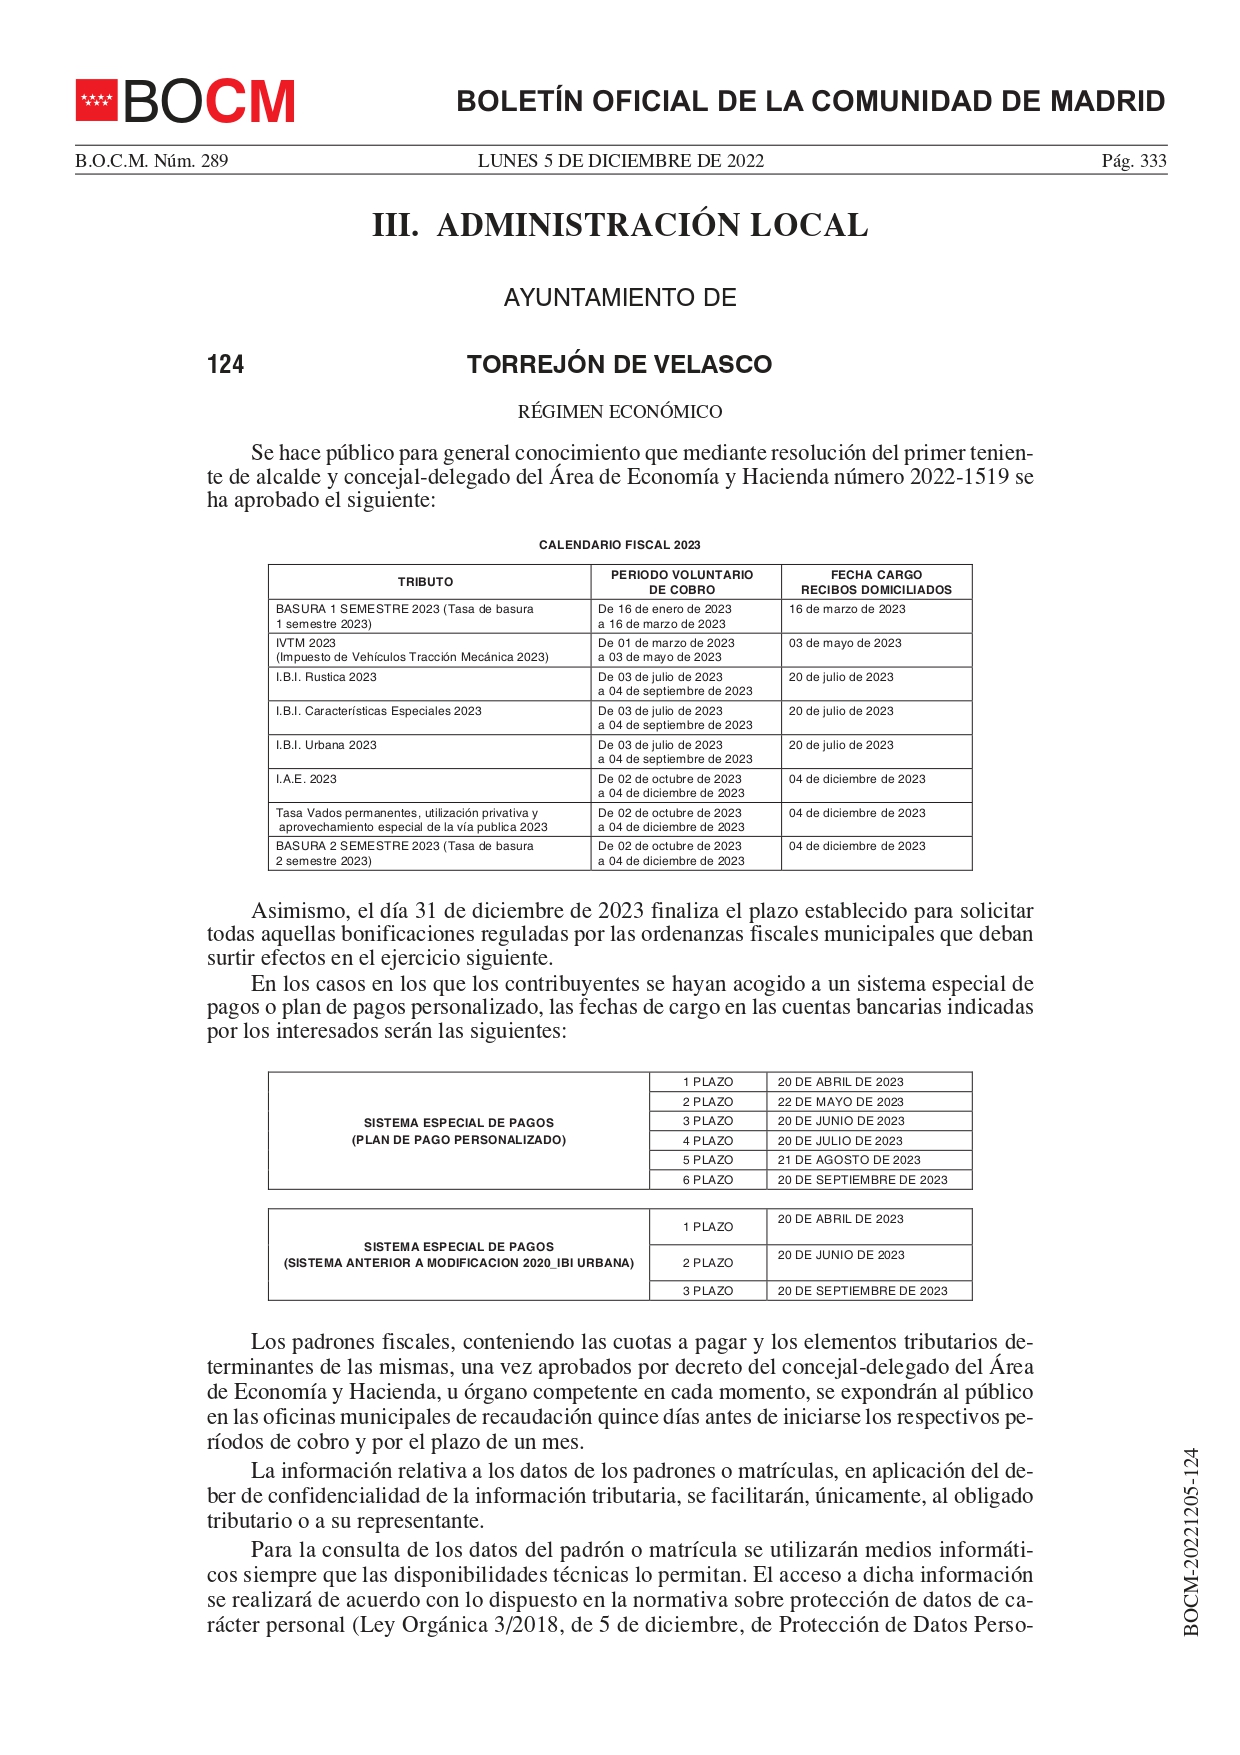 BOCM 05 12 2022 calendario fiscal TORREJON DE VELASCO 2023 page 0001